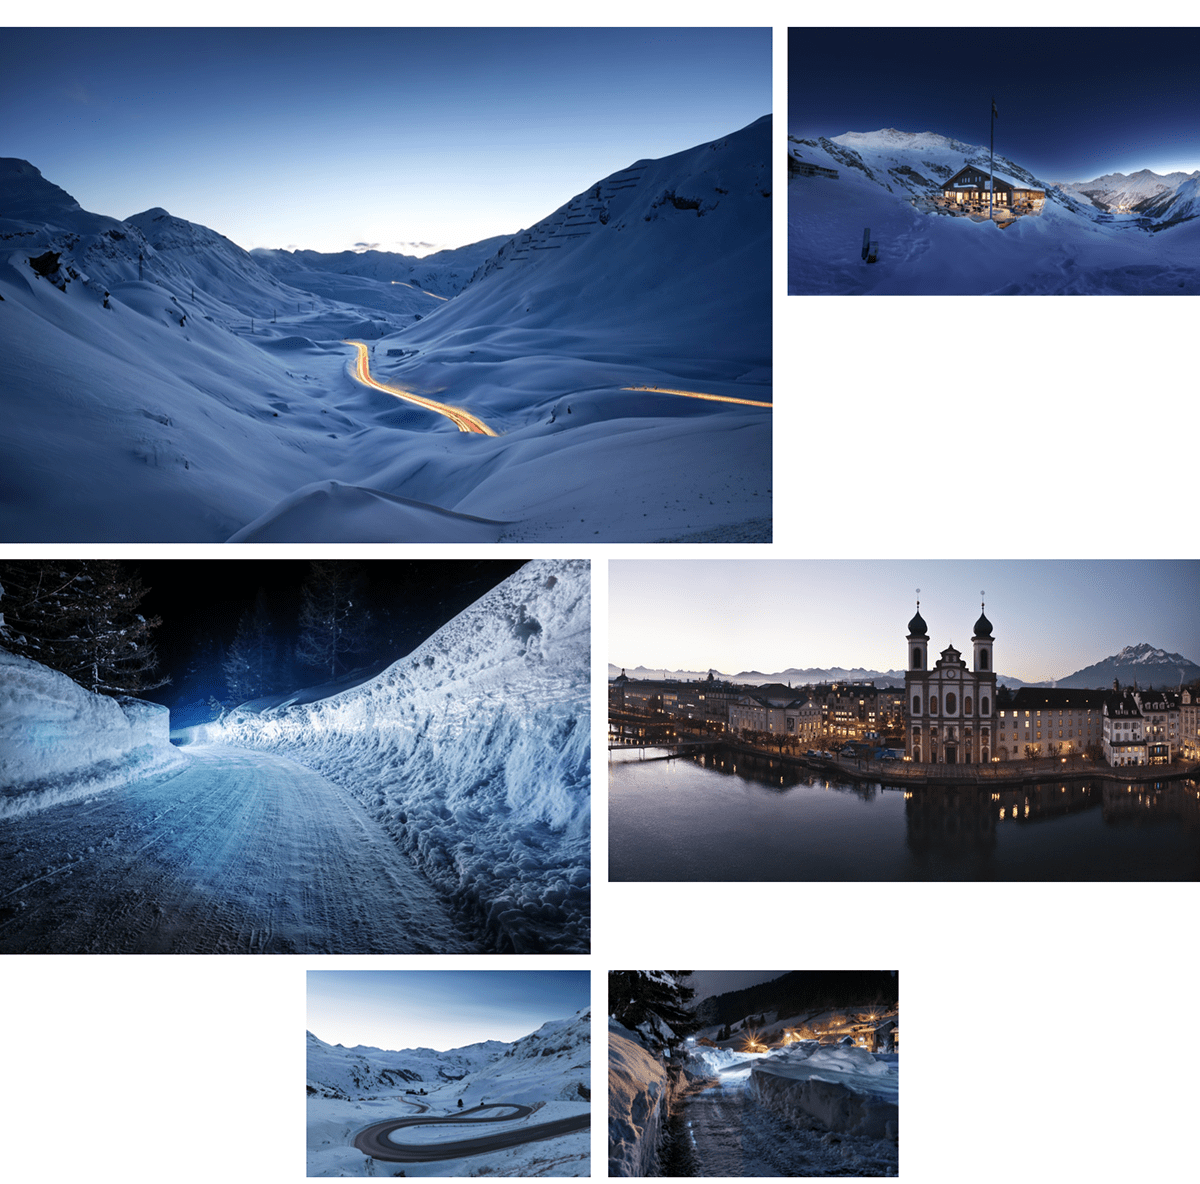 Switzerland Landscape Photography  Nature MAGROUND best-of landscape photography medium format stock